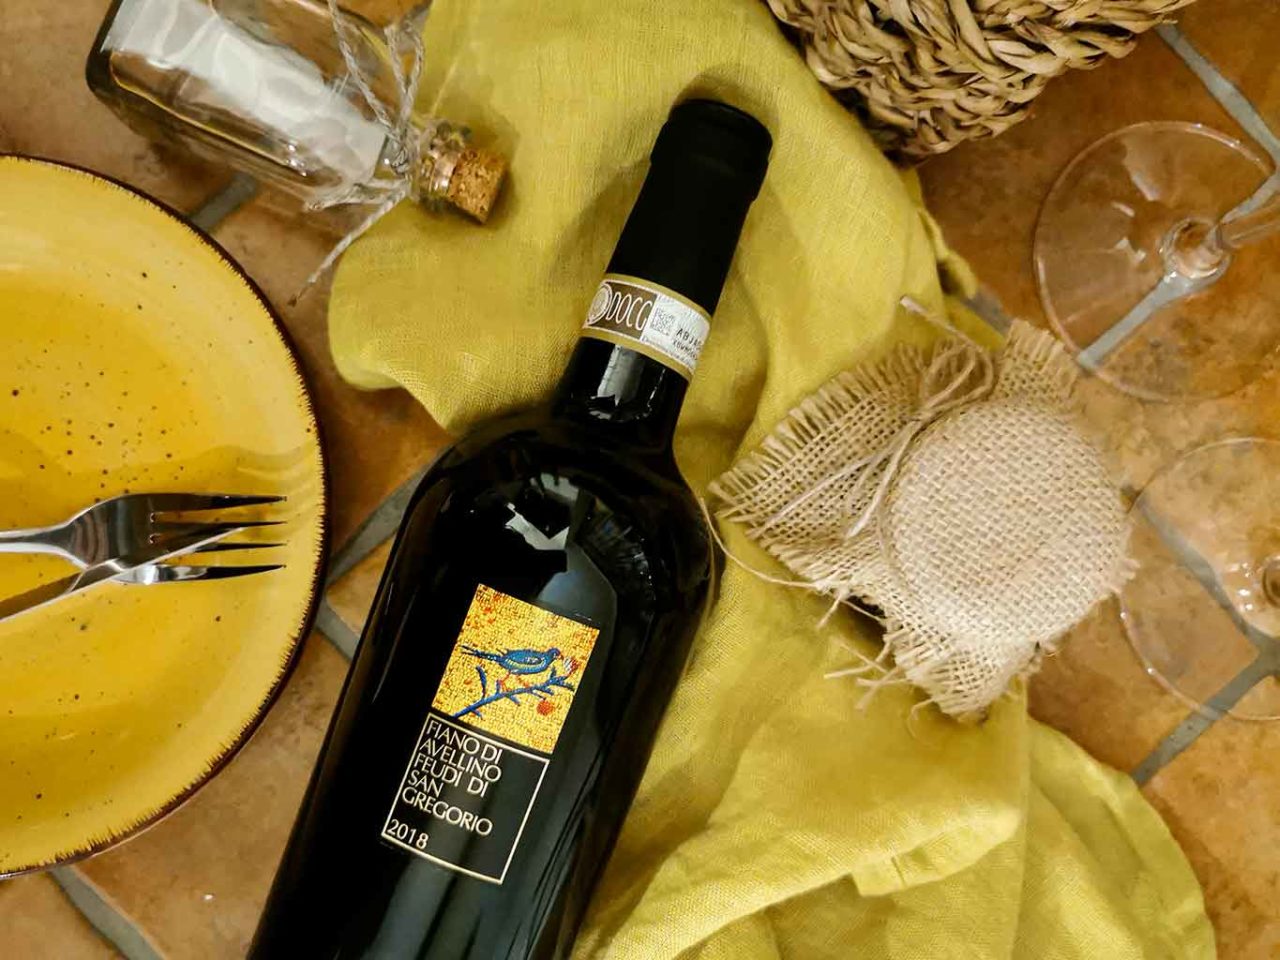 Fiano di Feudi di San Gregorio, tra i migliori vini pregiati italiani 